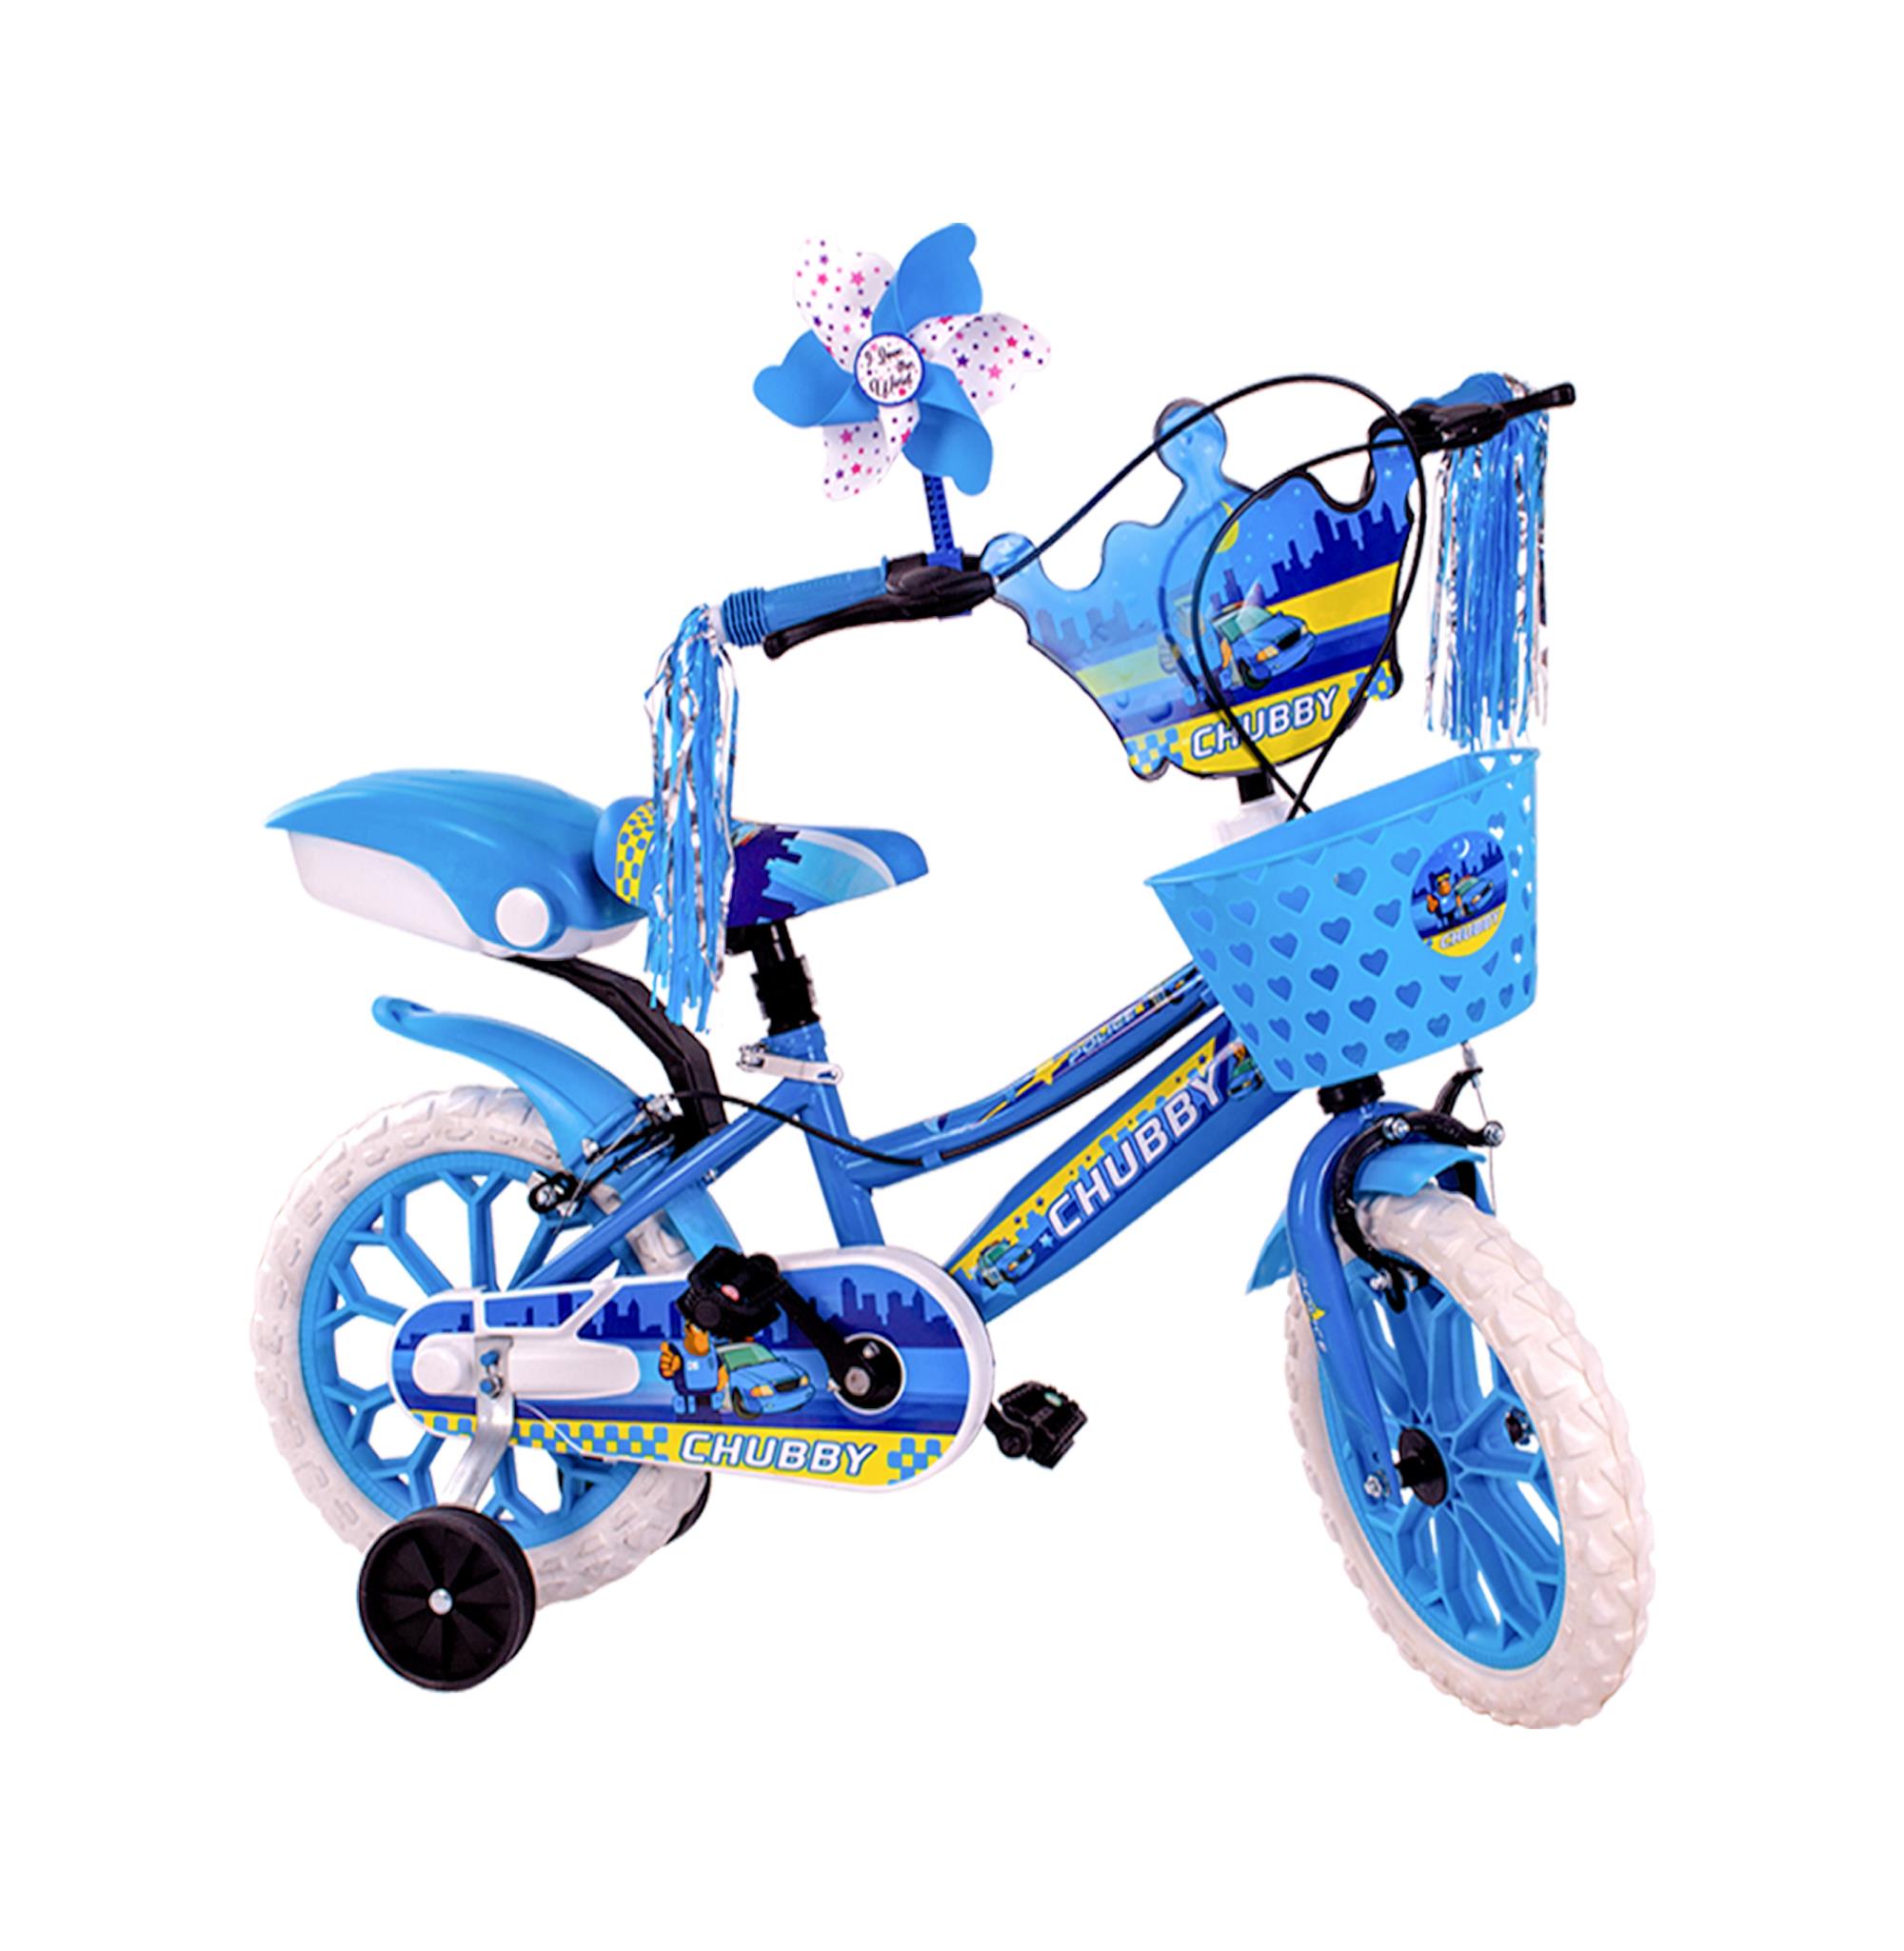 Chubby Baby Çocuk Bisikleti 15 Jant Mavi 3-5 Yaş İçin Uygundur